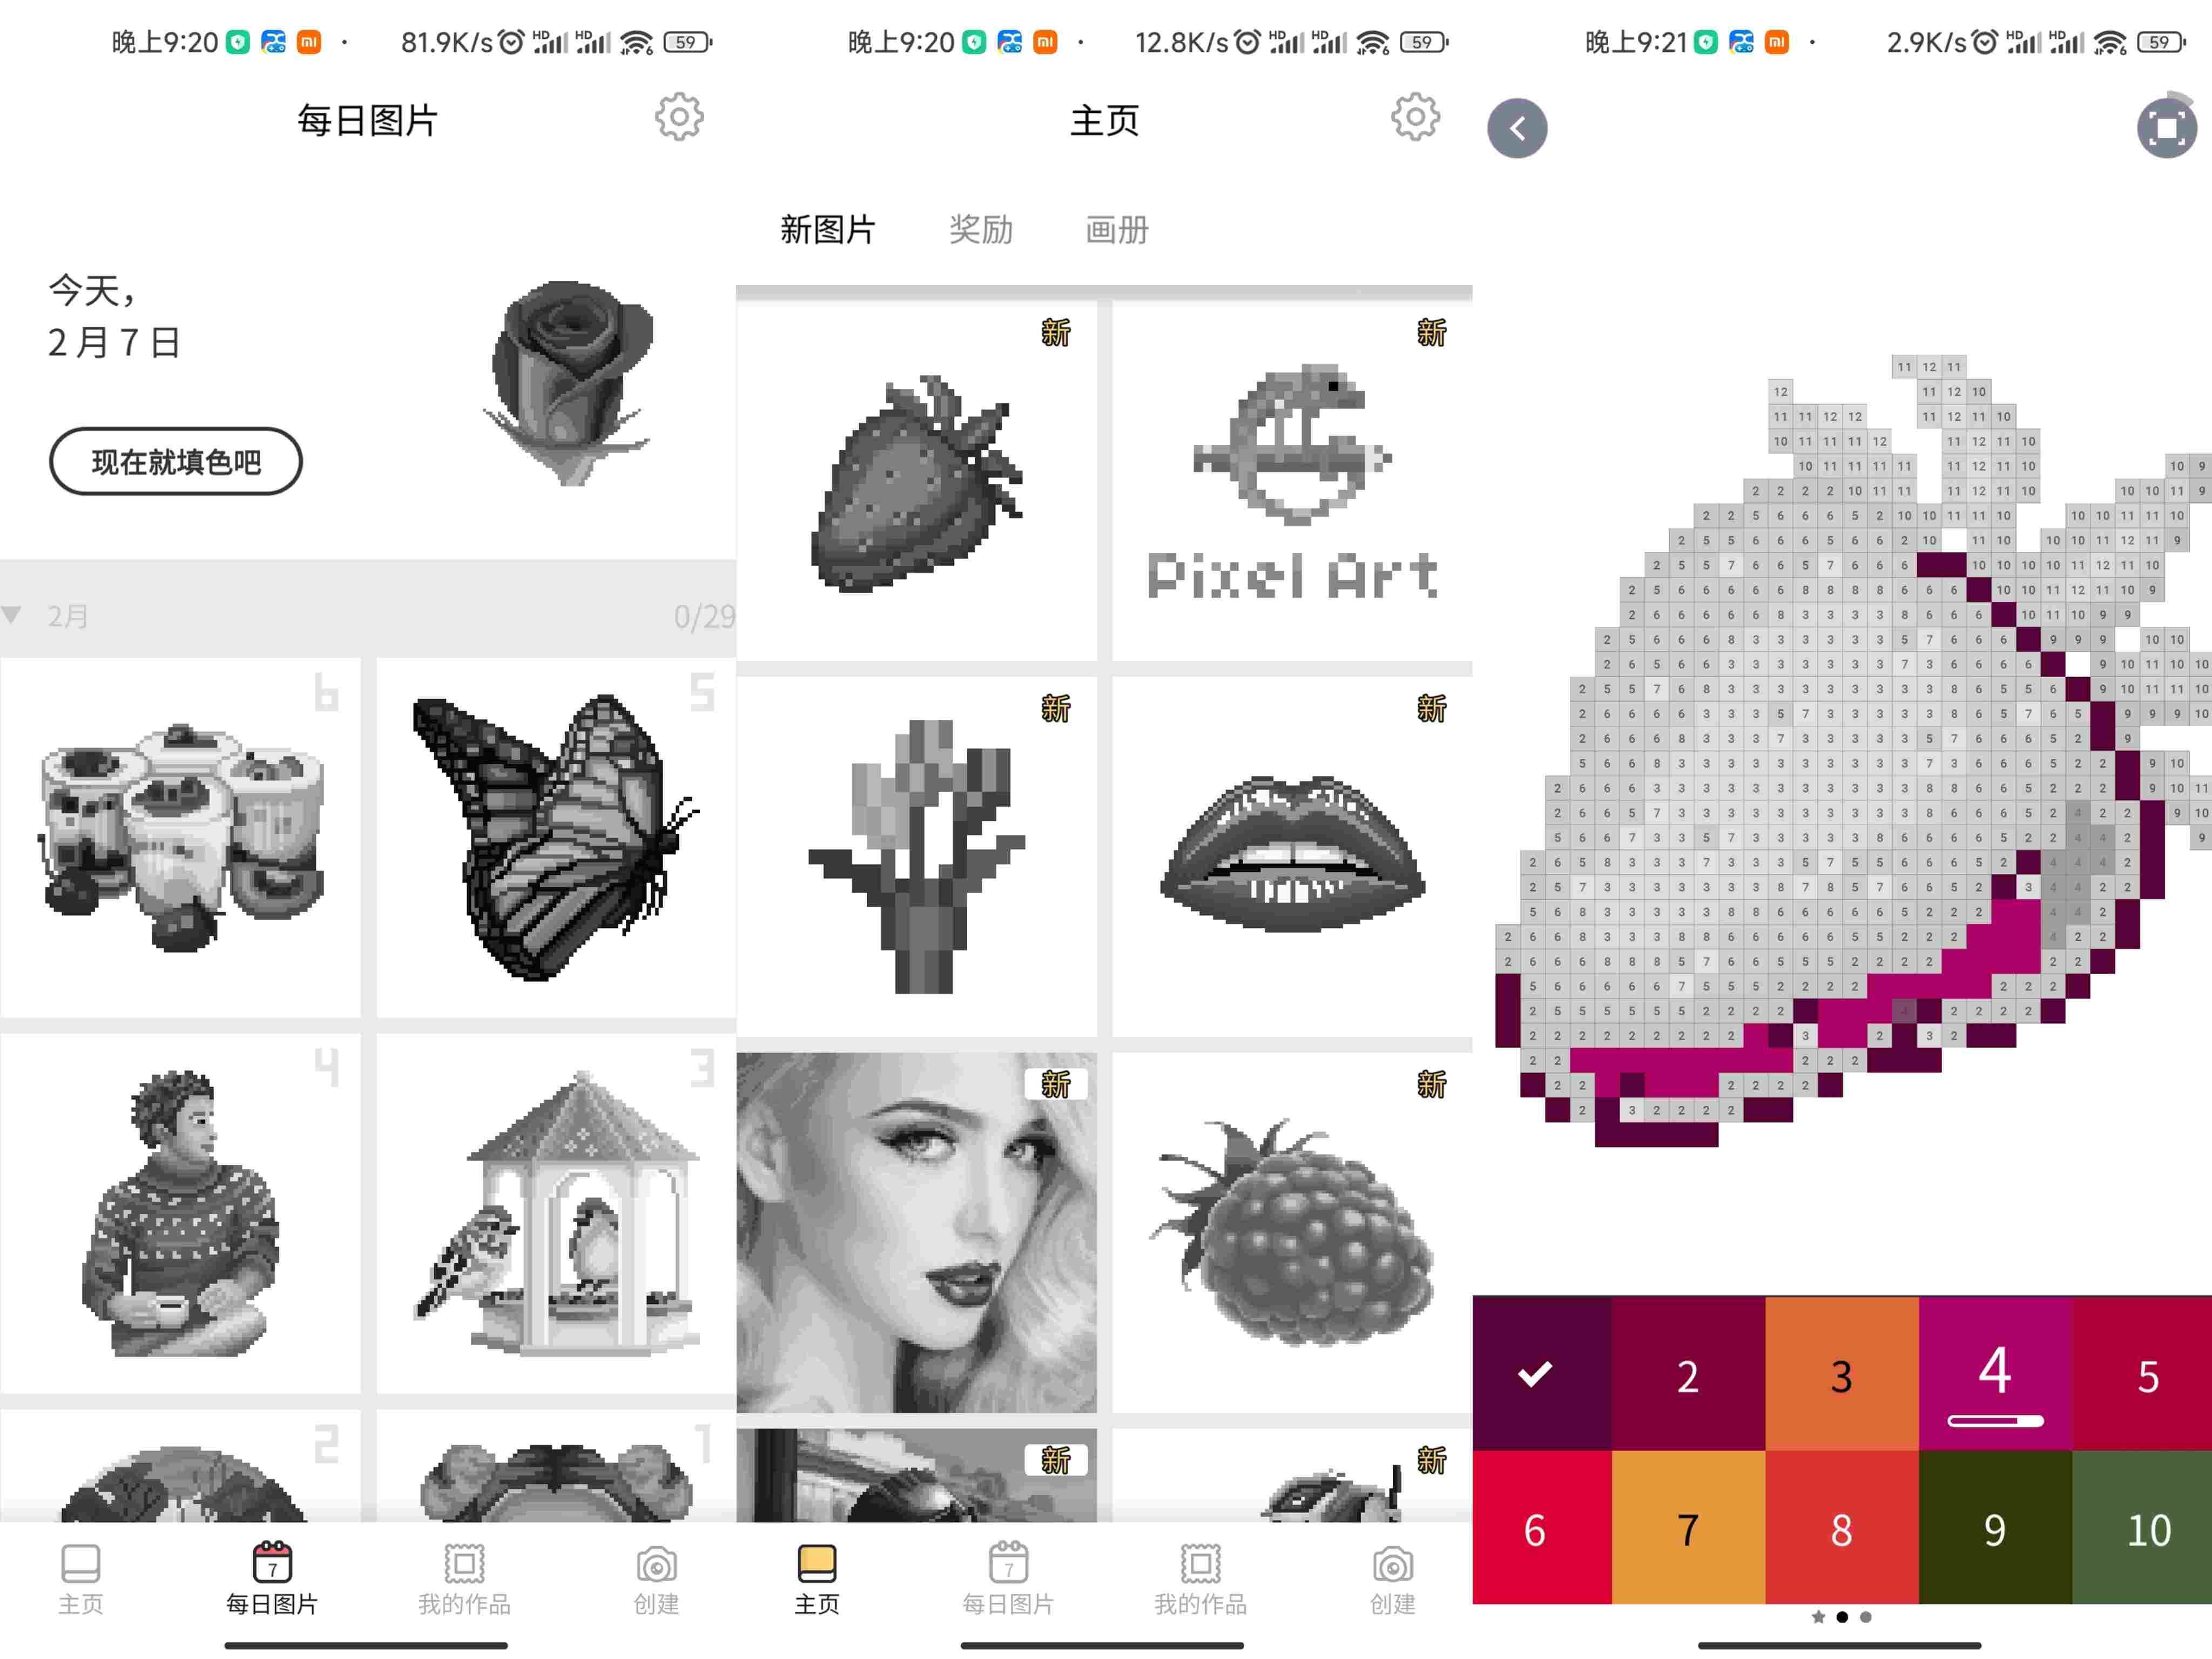 像素艺术 v1.0 解锁高级版 免费的 2D 和 3D 画作软件